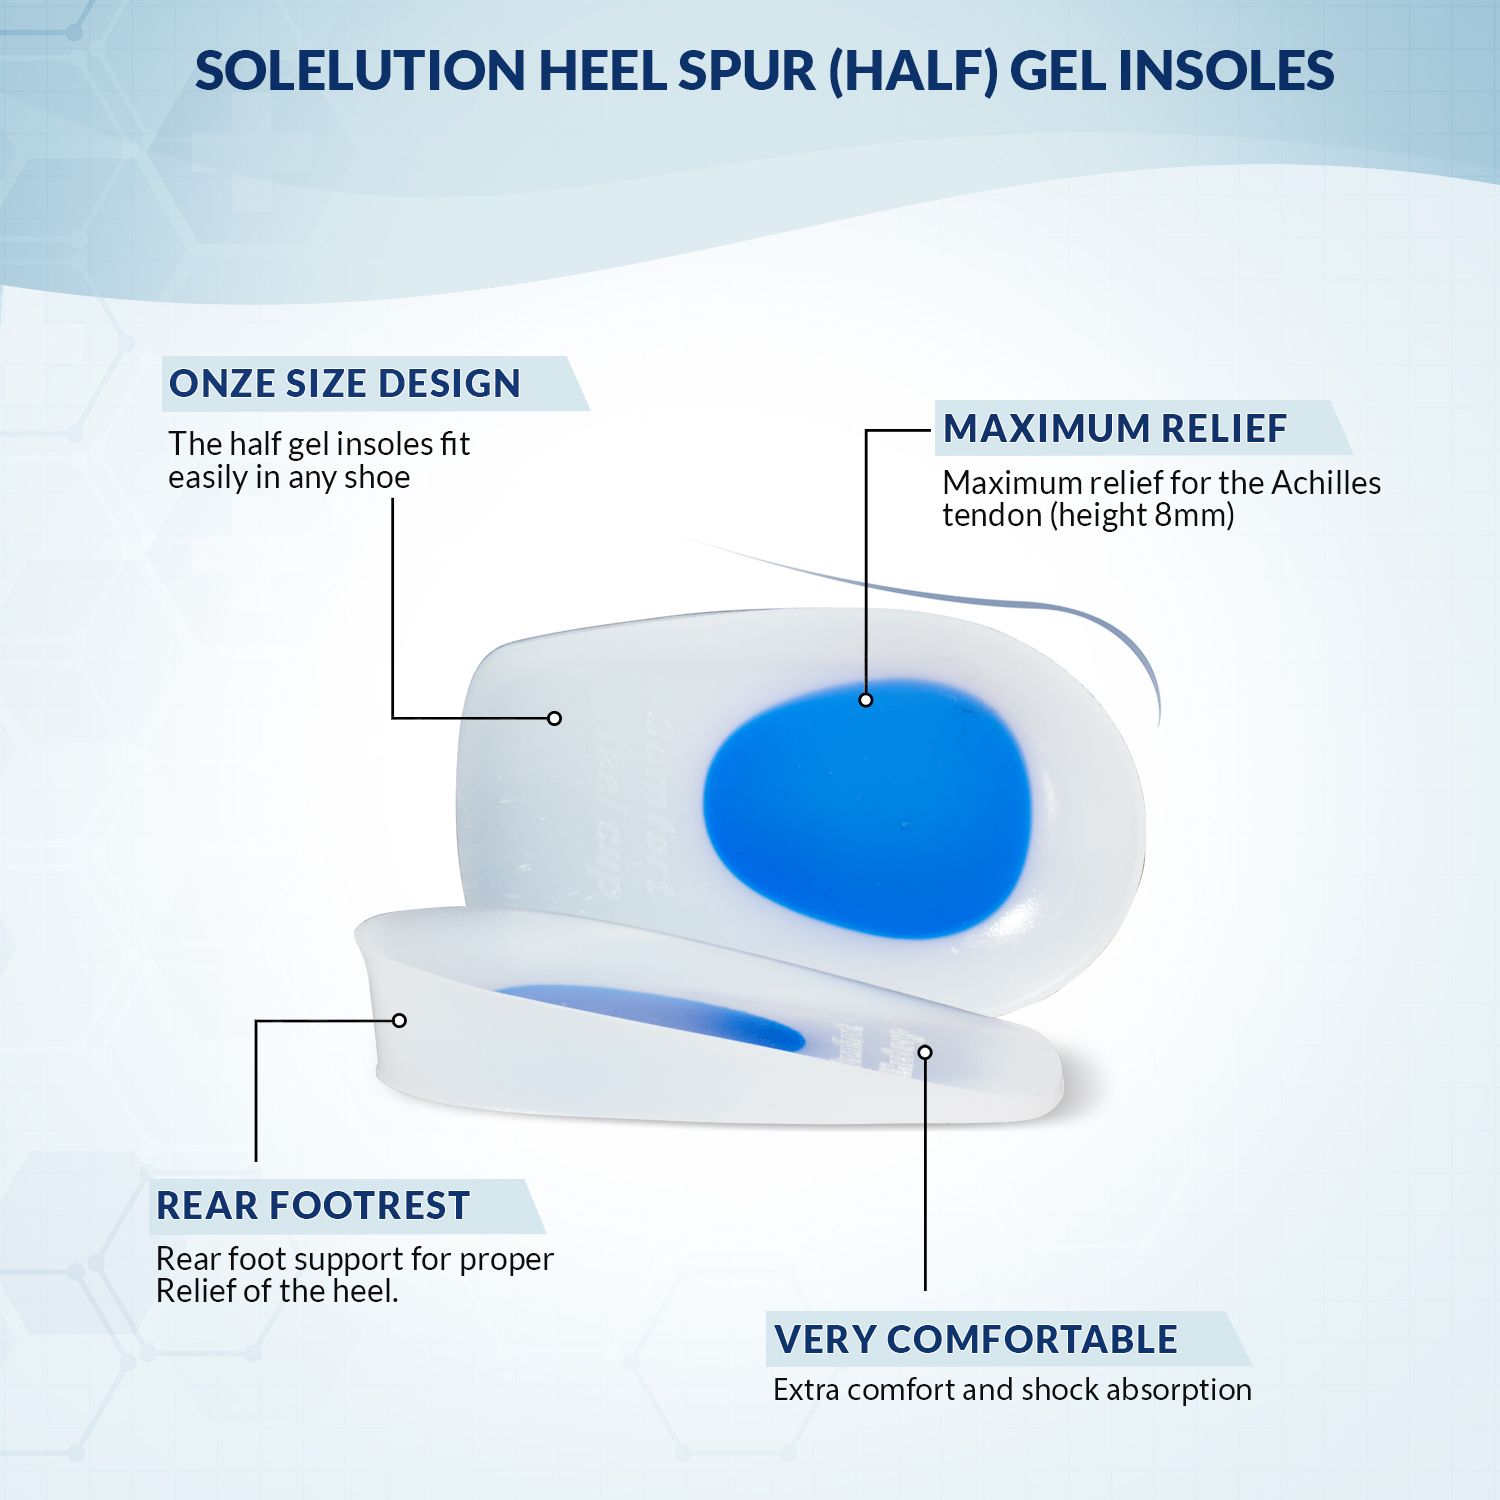 product information of the solelution heel spur half gel insoles